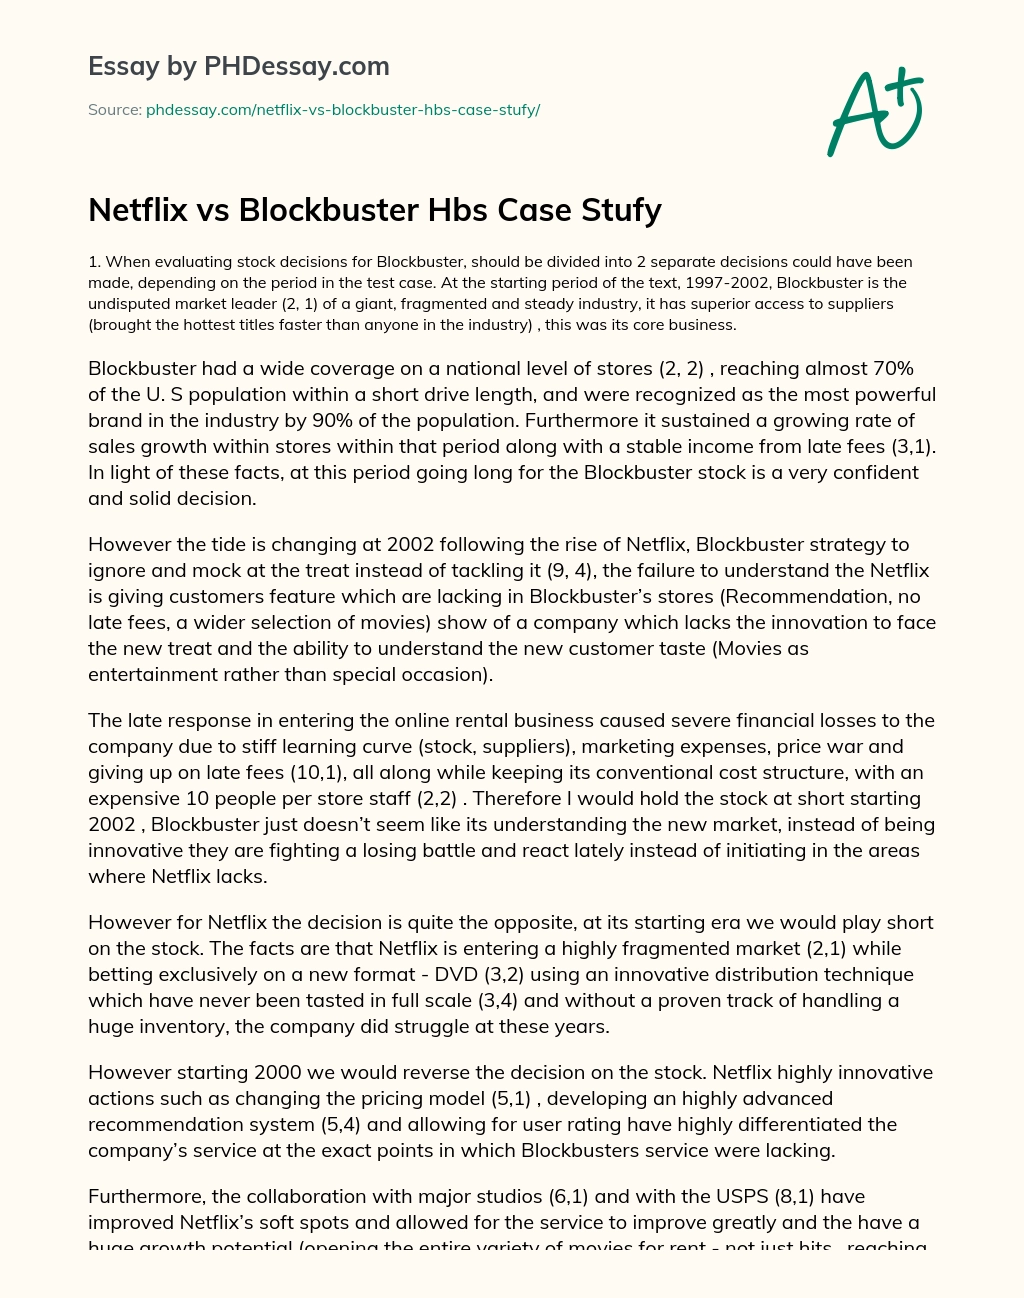 Netflix vs Blockbuster essay